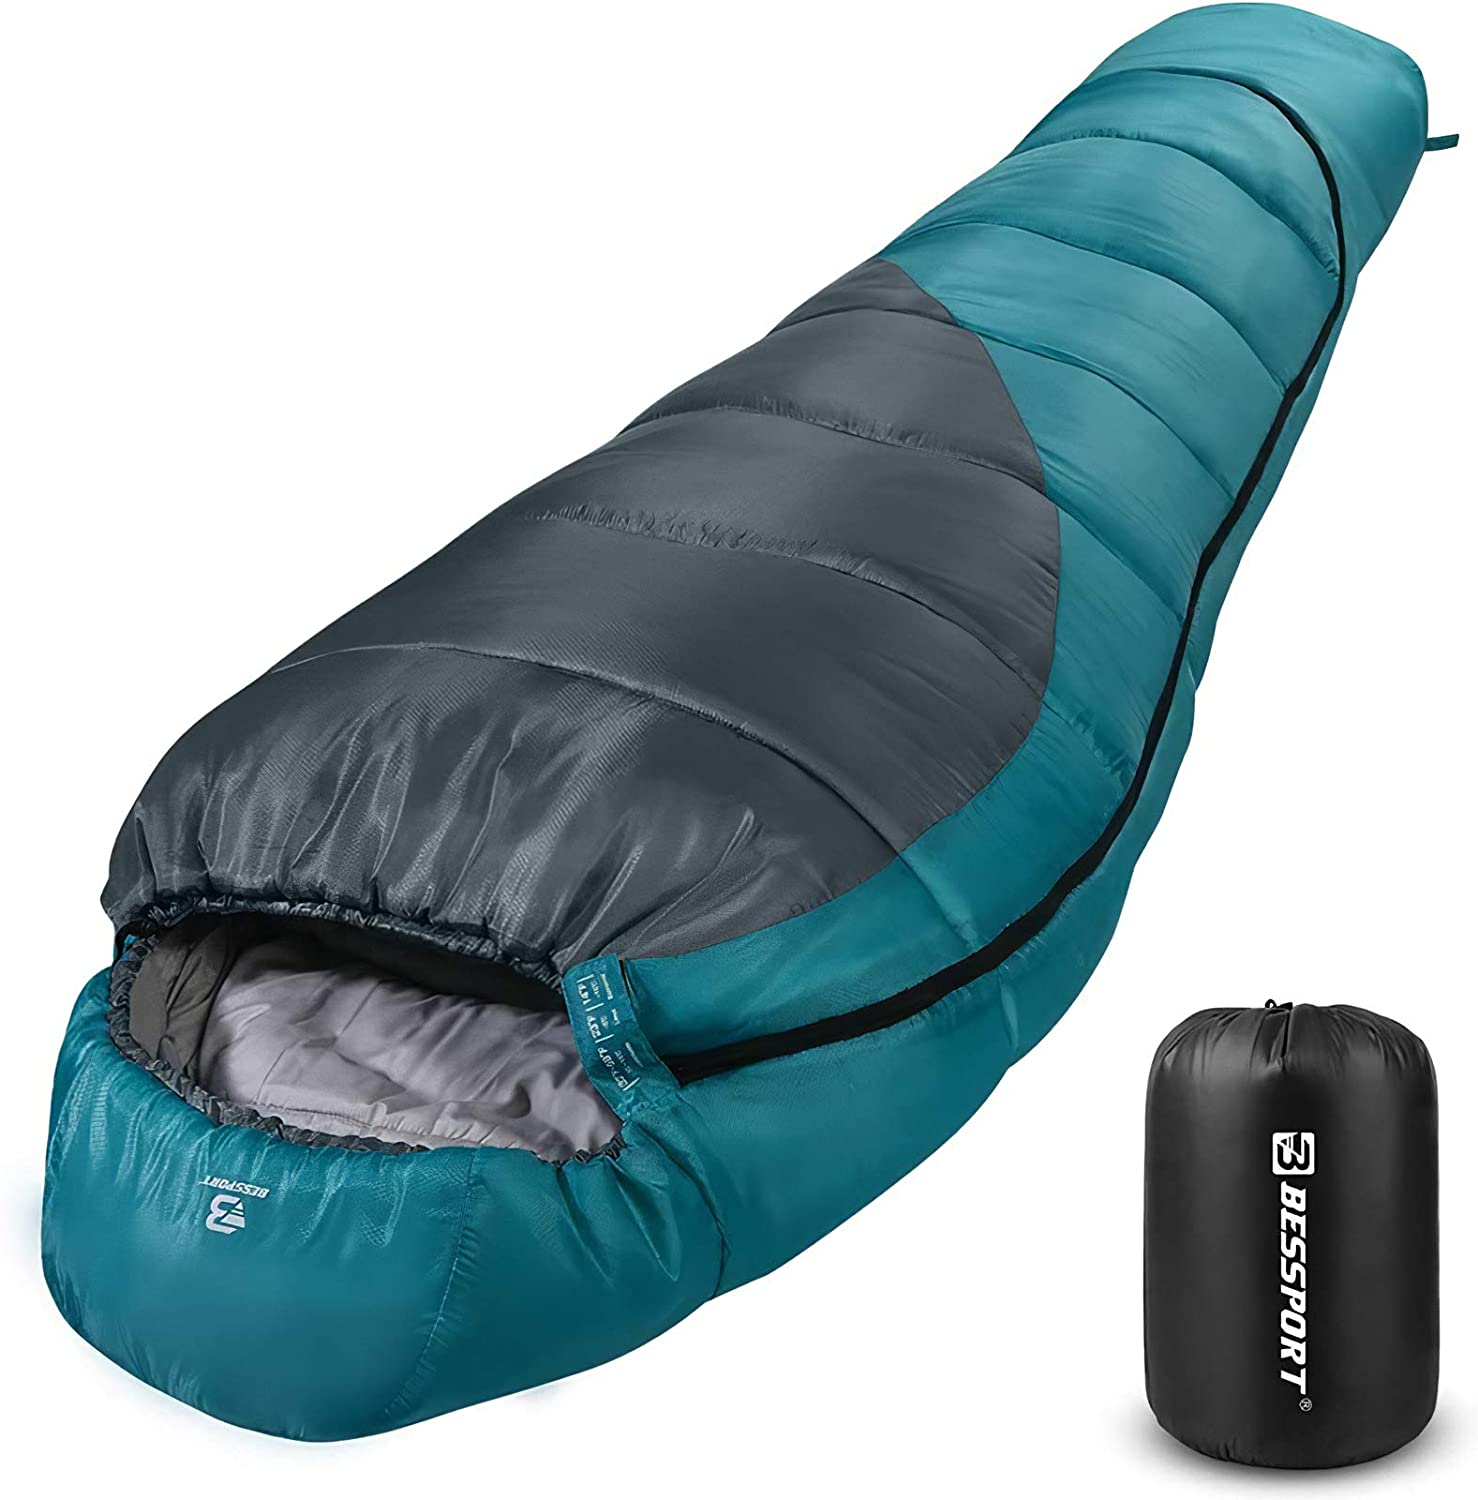 Light 800 ligeramente peso saco de dormir momia Saco de dormir camping saco de dormir mantas 